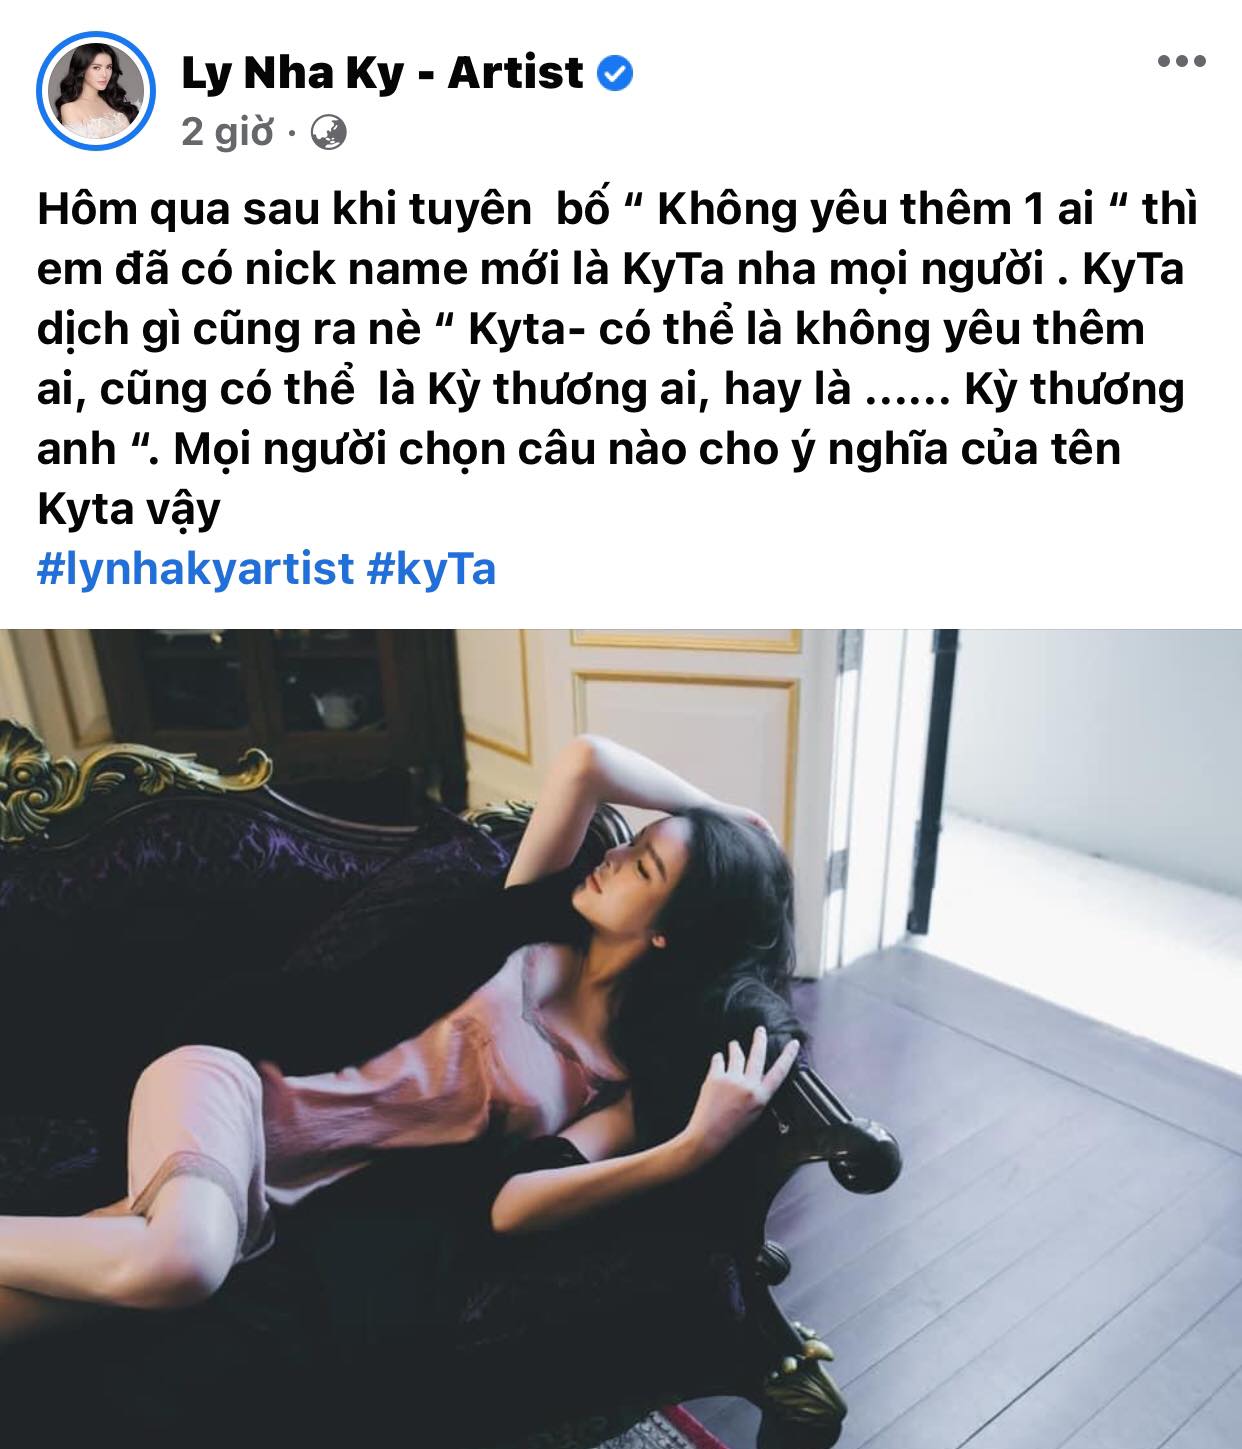 Ly-nha-ky-bat-ngo-thong-bao-ve-nghe-danh-moi-cau-chuyen-dang-sau-gay-xon-xao-cdm